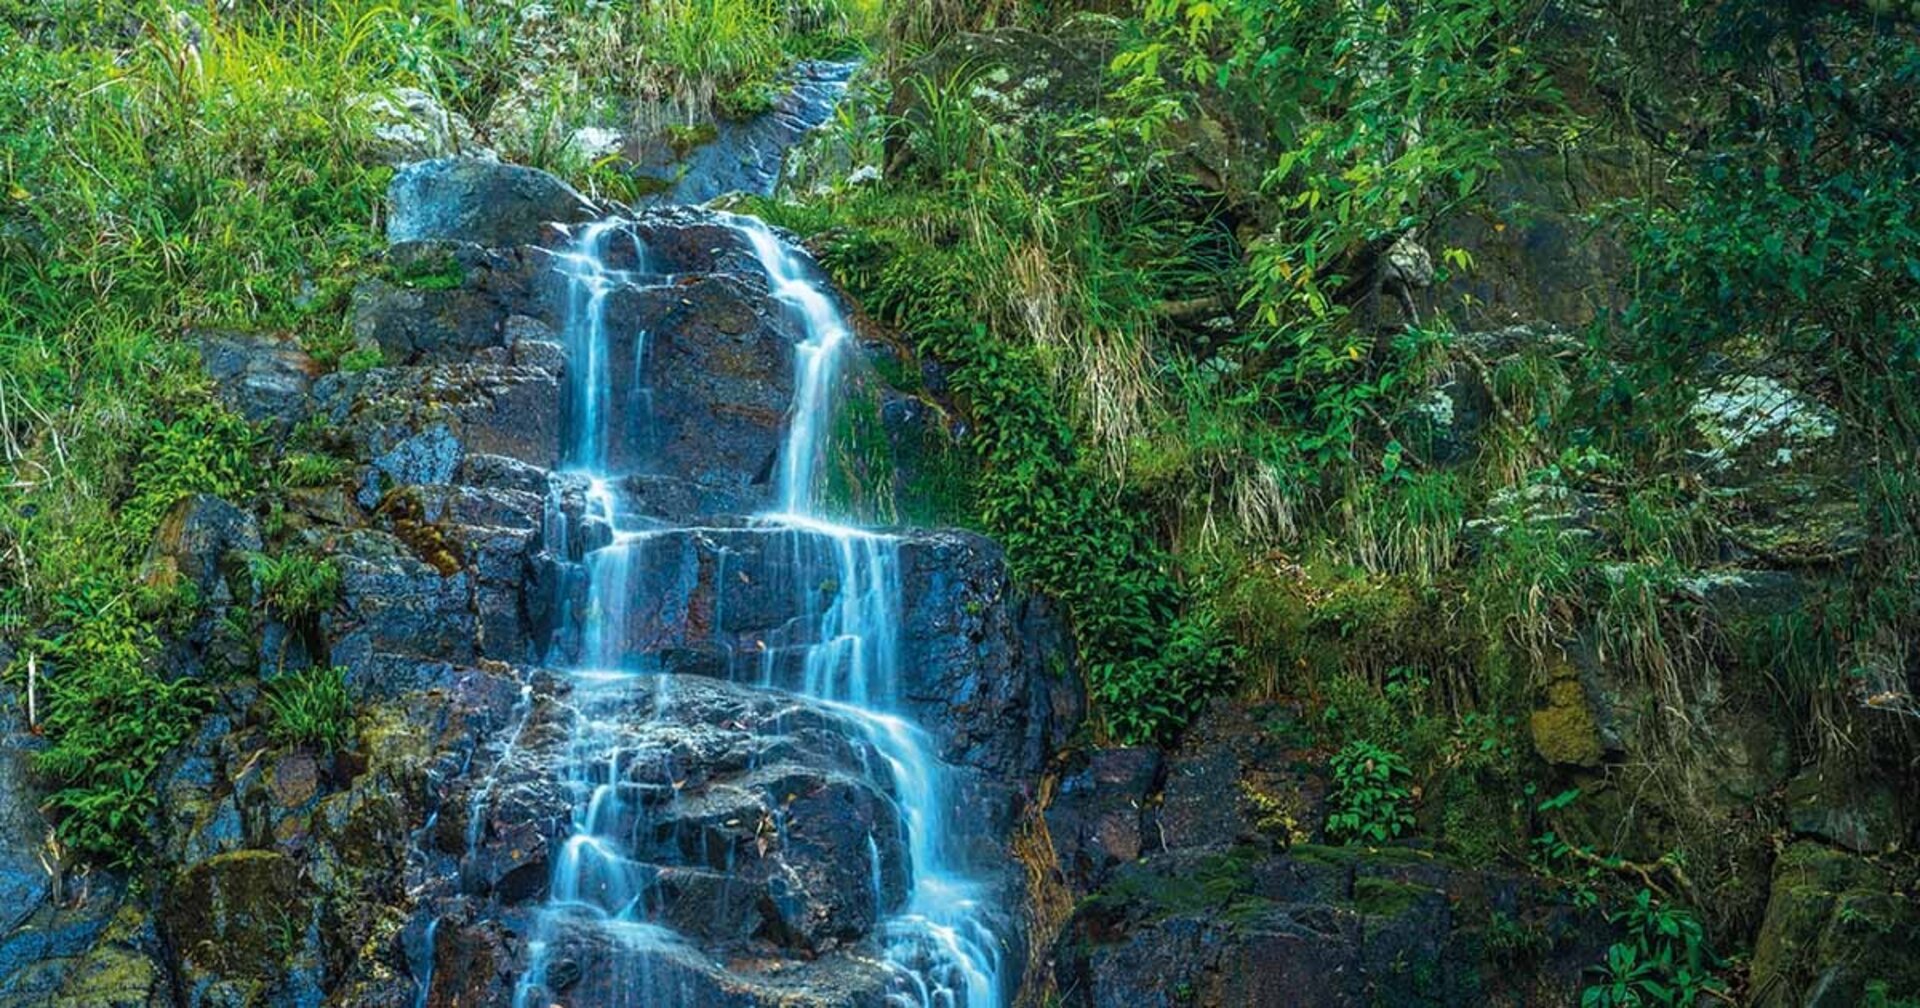 Hiking Tai Mo Shan Mountain and Cooling Off at Ng Tung Chai Waterfalls